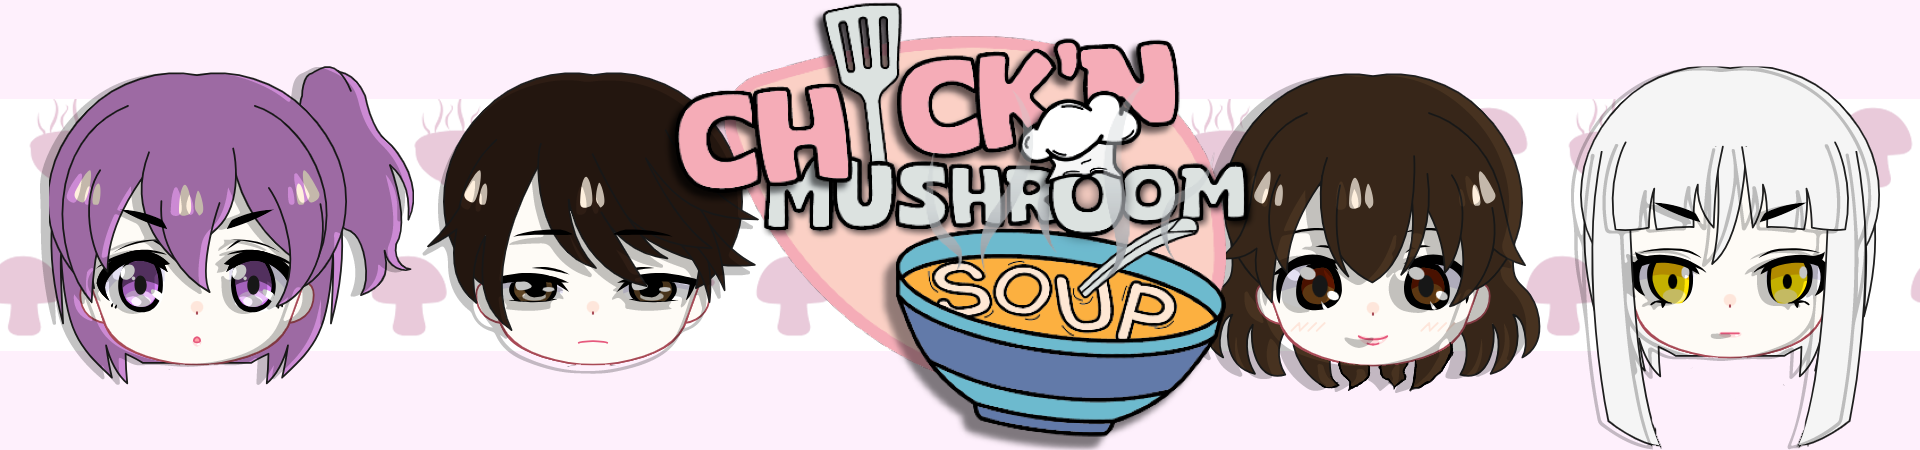 Ckick'n Mushroom Soup